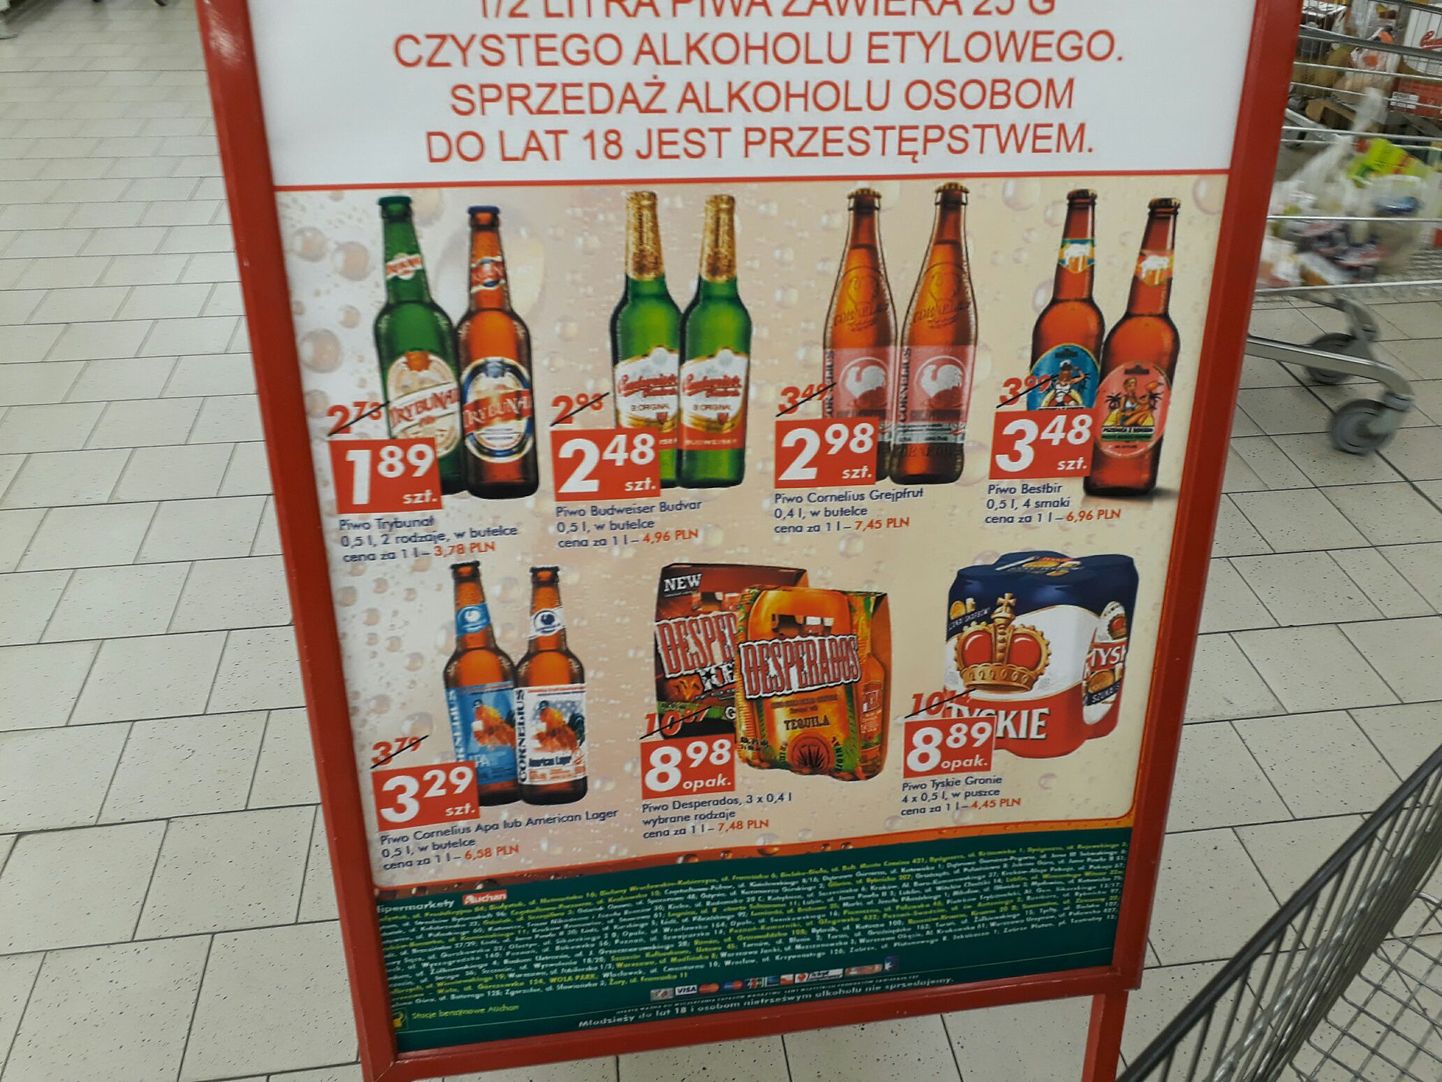 Цены на светлое пиво Budweiser в Польше.